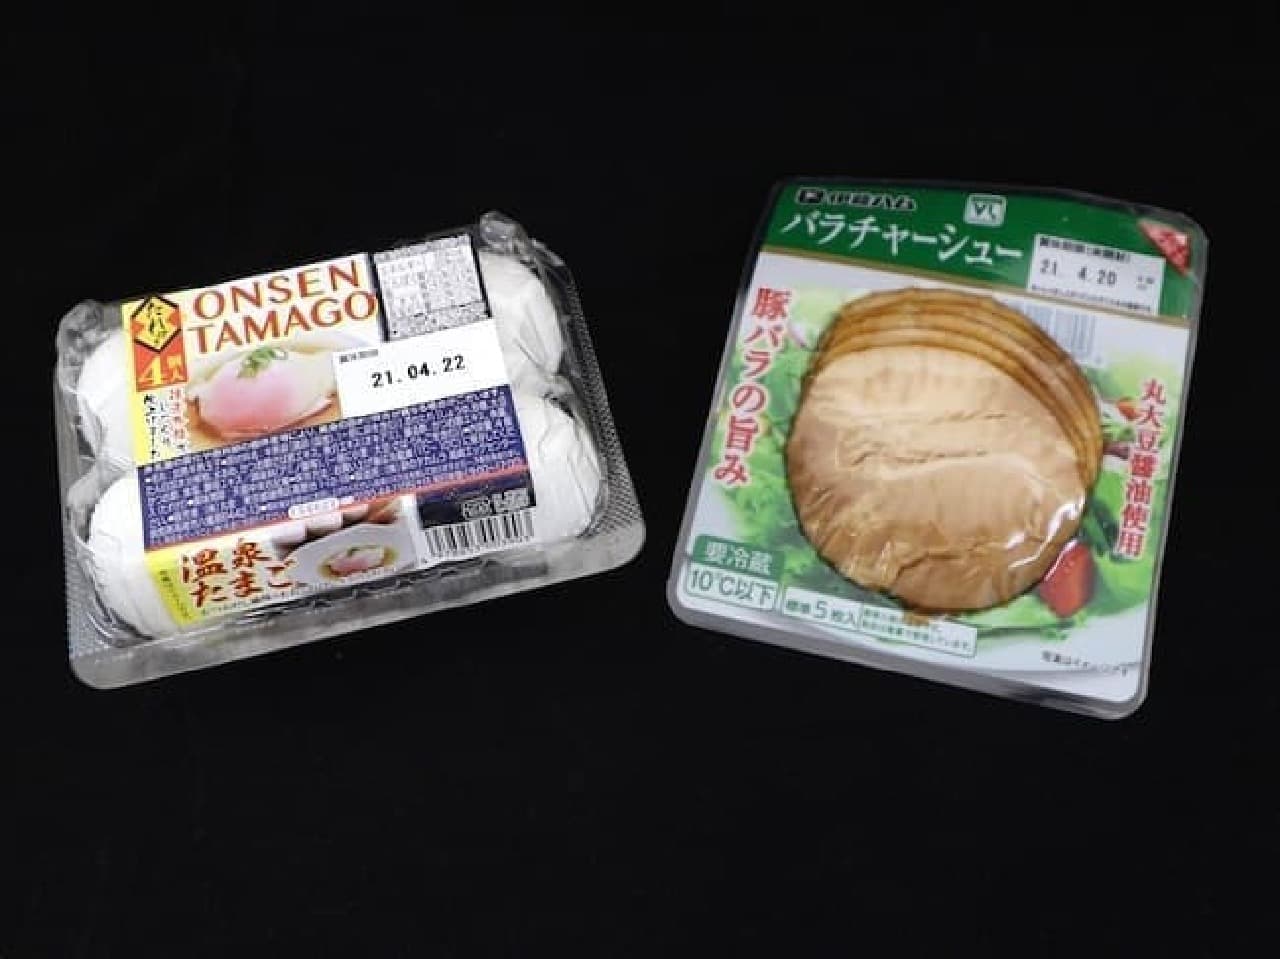 Lawson Store 100 "Onsen Tamago" and "VL Bara Char Siu"